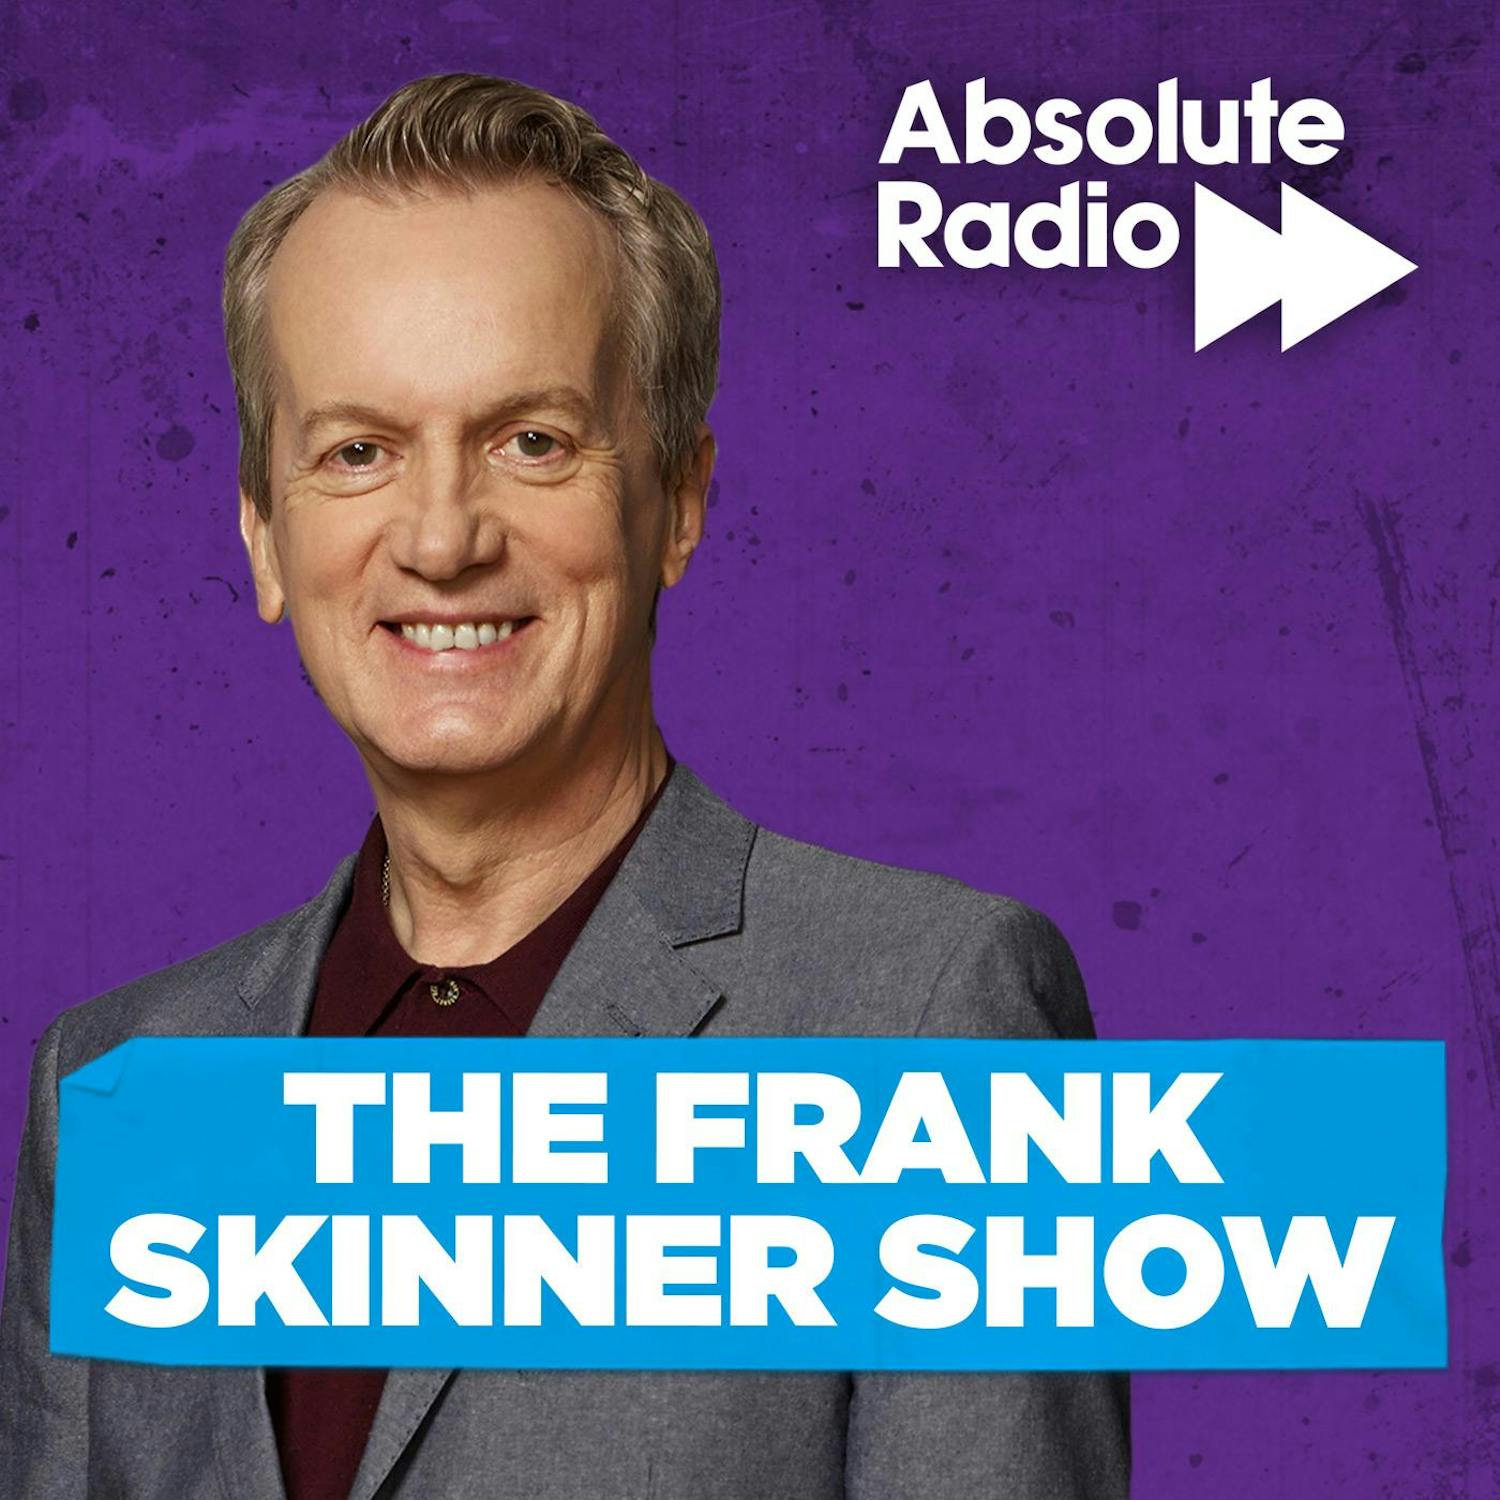 The Frank Skinner Show - LLQJ